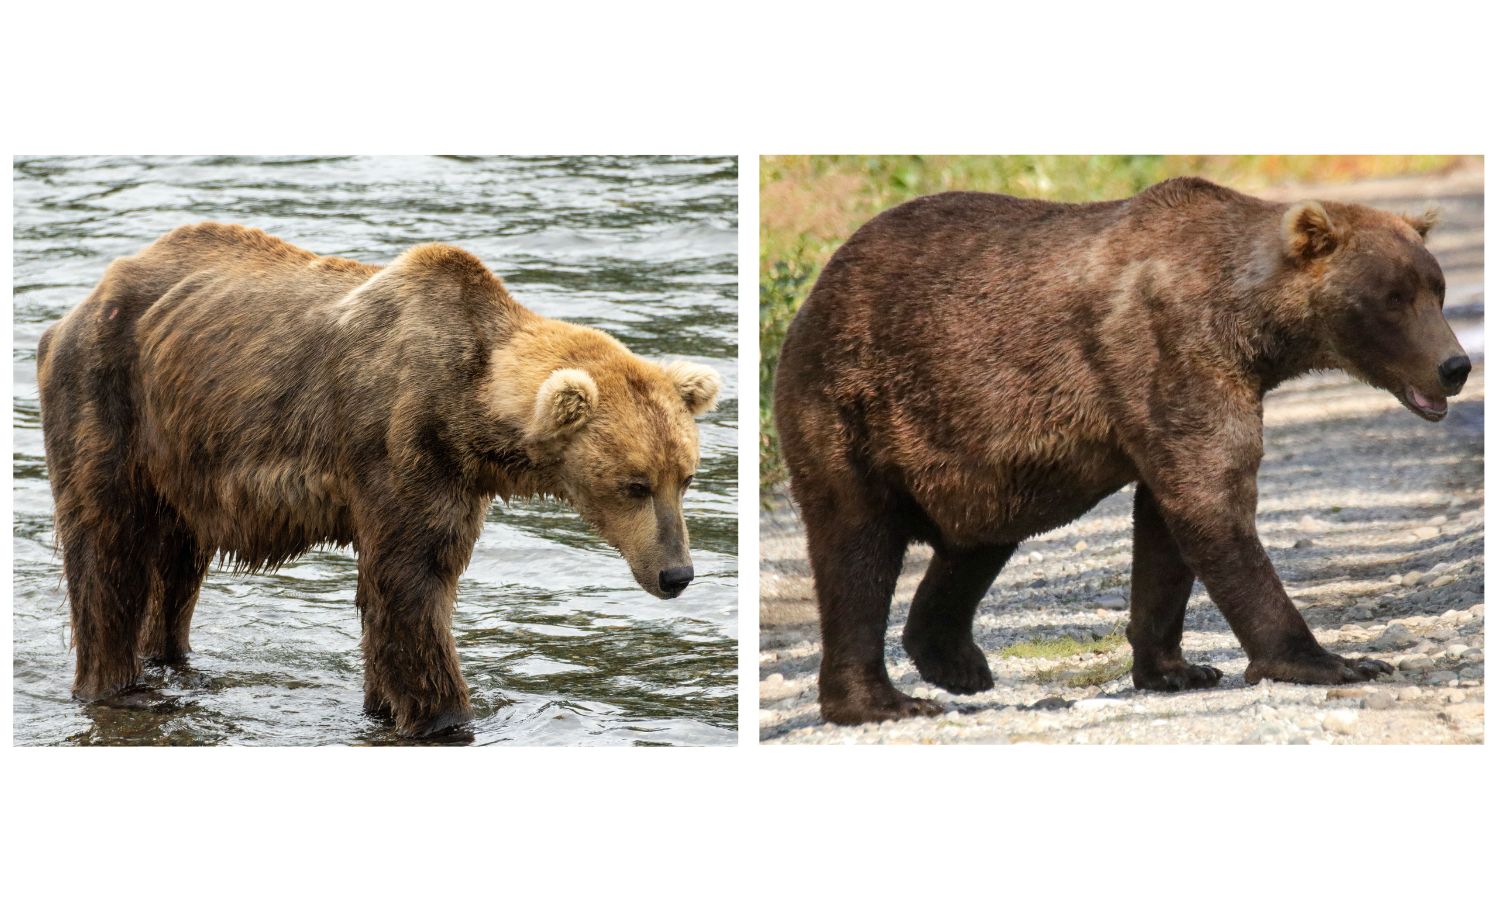 An image of a fat bear during fat bear week 2023